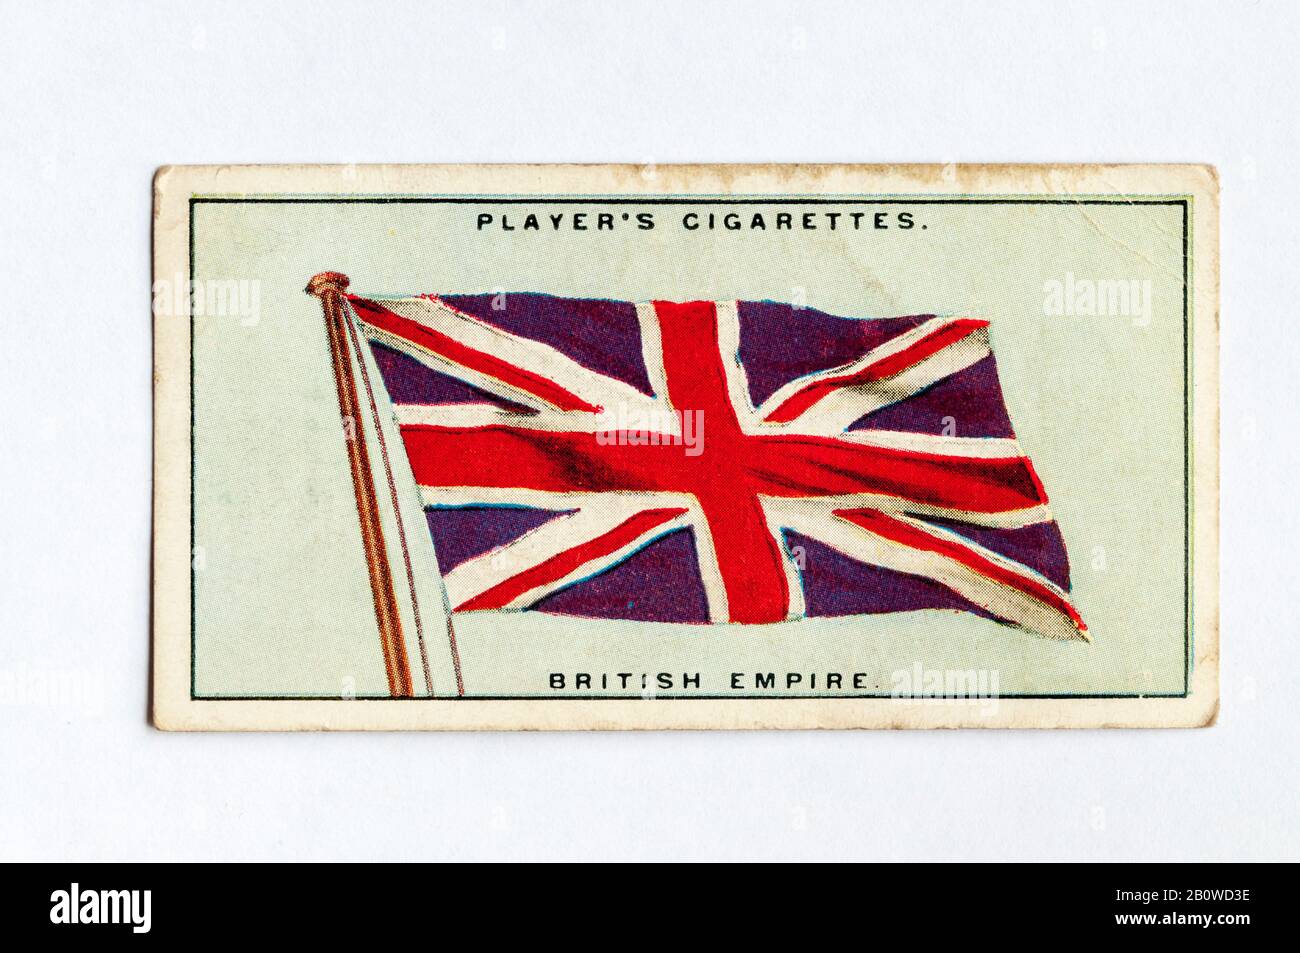 Die Zigarettenkarte des Spielers in Flags of the League of Nations zeigt die Flagge des British Empire, die normalerweise als Union Jack bezeichnet wird. Ausgabe Von 1928. Stockfoto